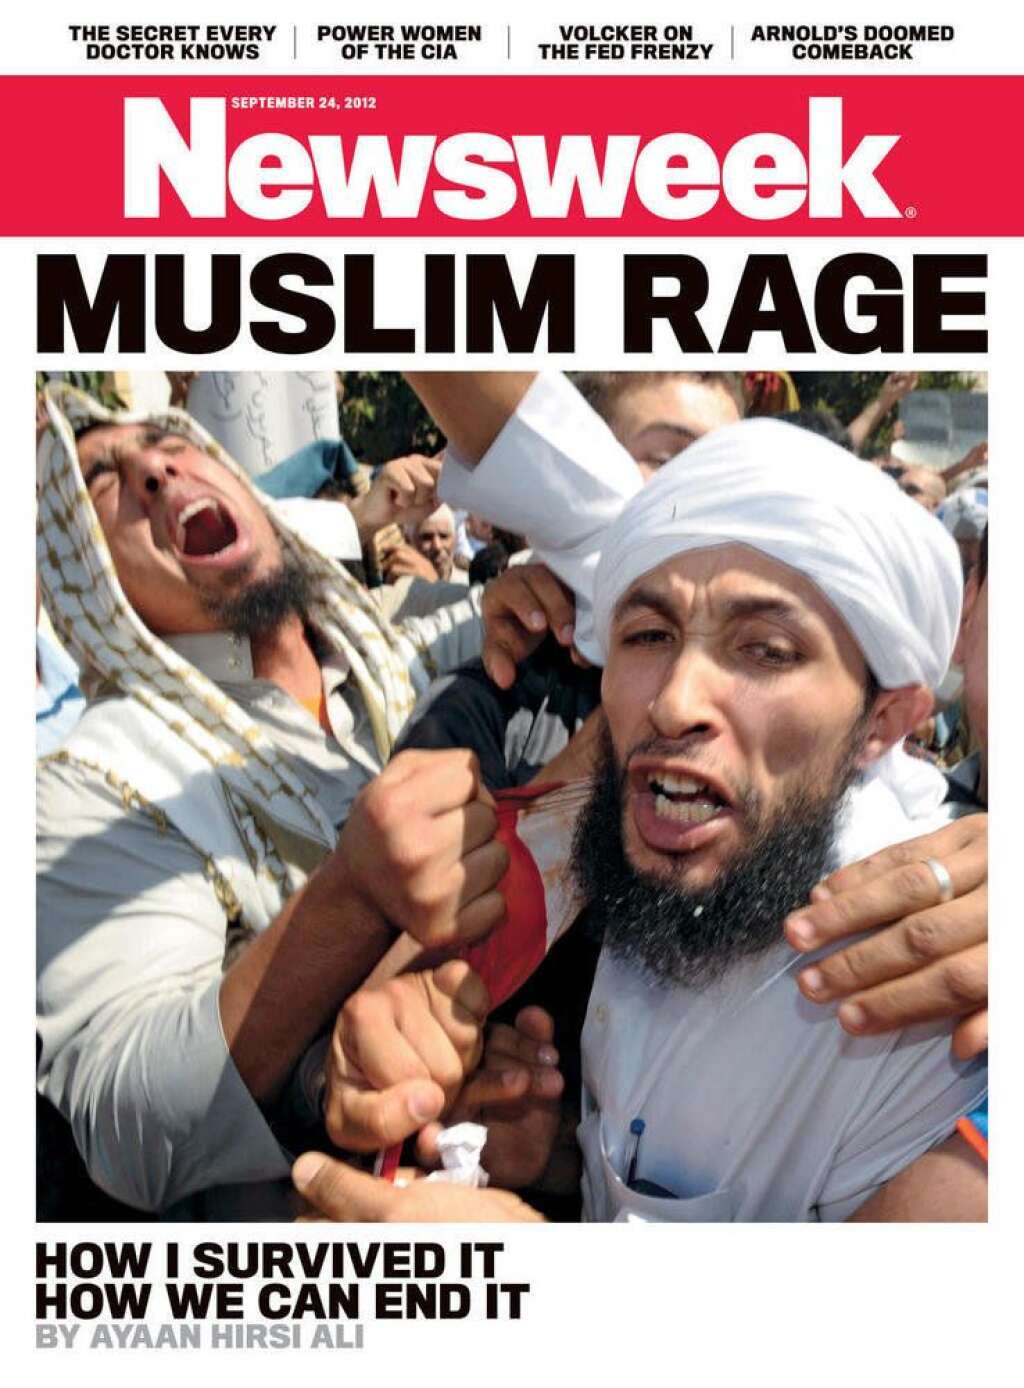 L'édition du 24 septembre 2012 - "La rage des musulmans" - en référence à la colère qui a embrasé le monde arabe après la diffusion du film islamophobe  "Innocence of Muslims".